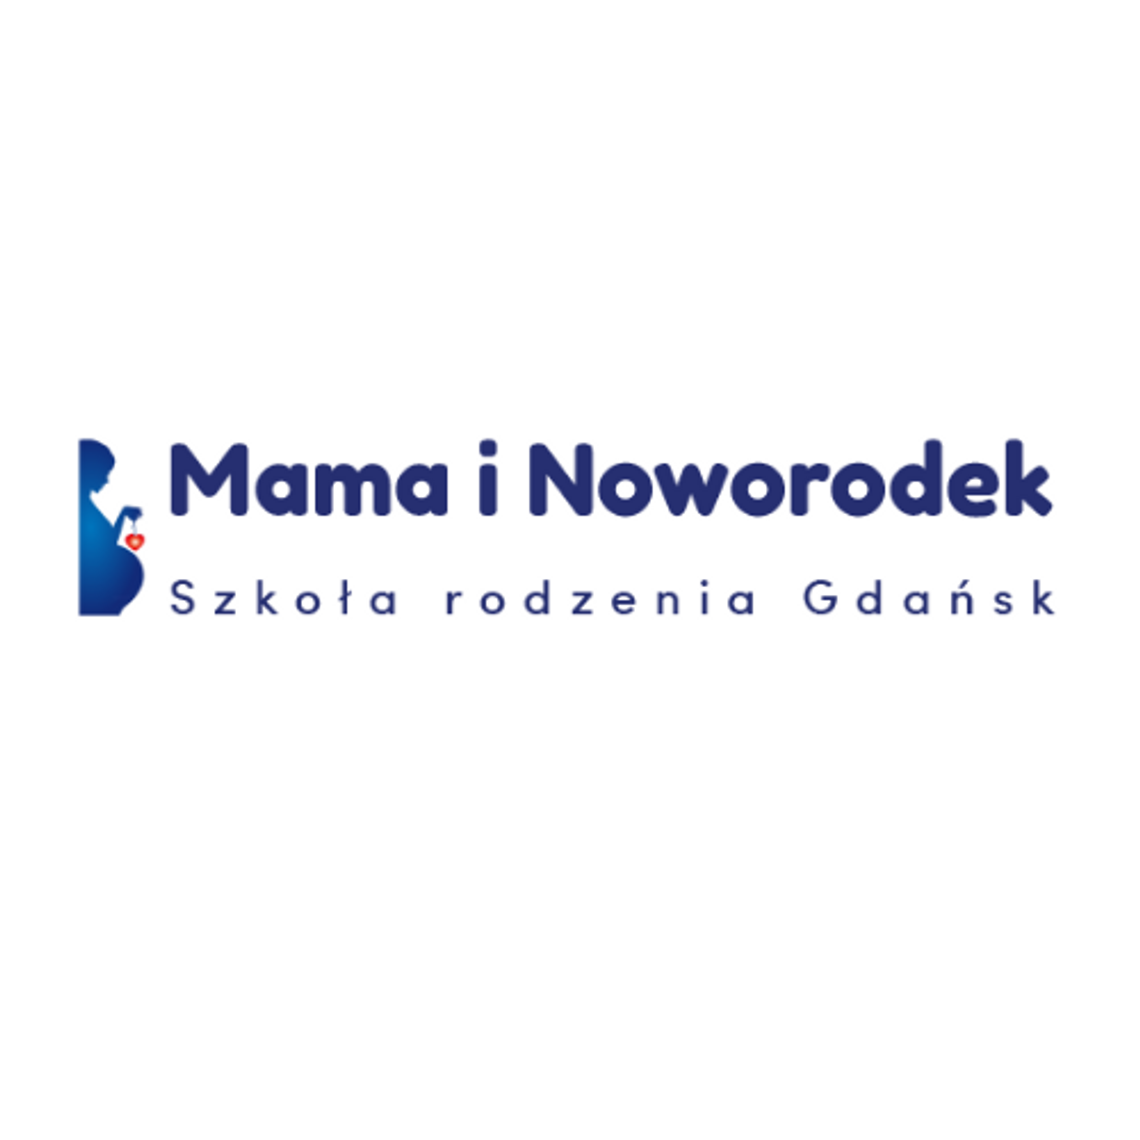 Szkoła Rodzenia Gdańsk - Mama i Noworodek